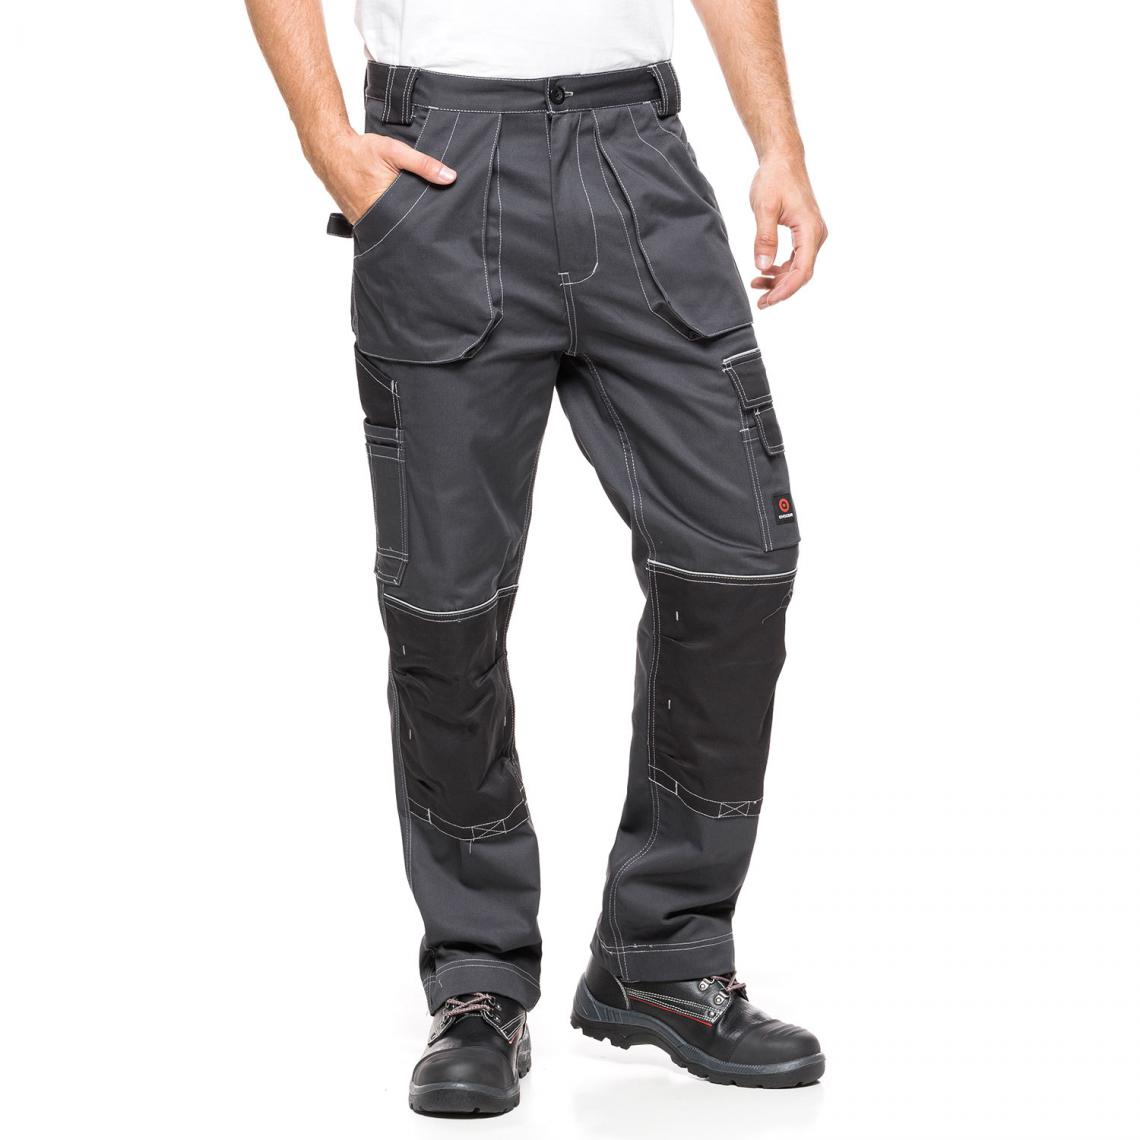 Sans Marque - Pantalon de travail Avacore HELIOS gris-noir Taille 58 (108-113) - Protections corps